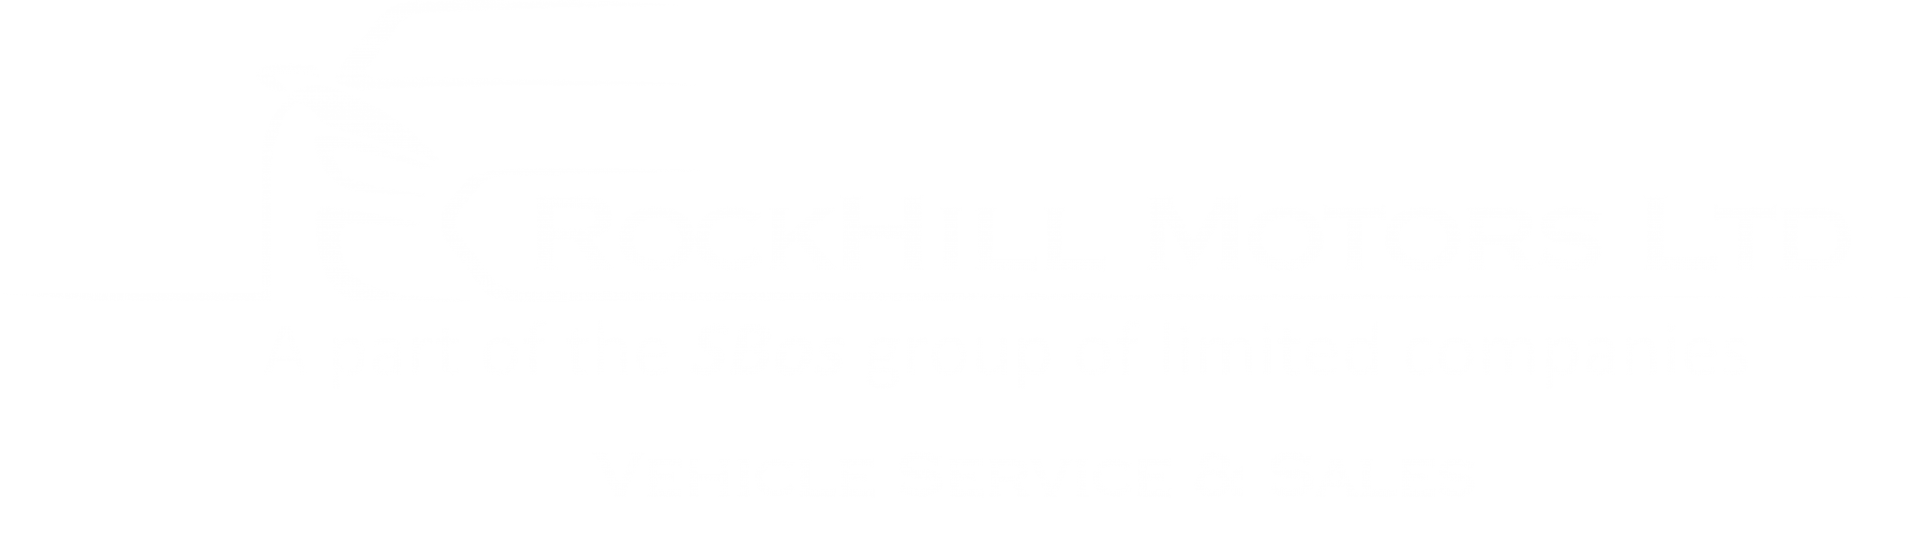 RockHill Motors Ltd